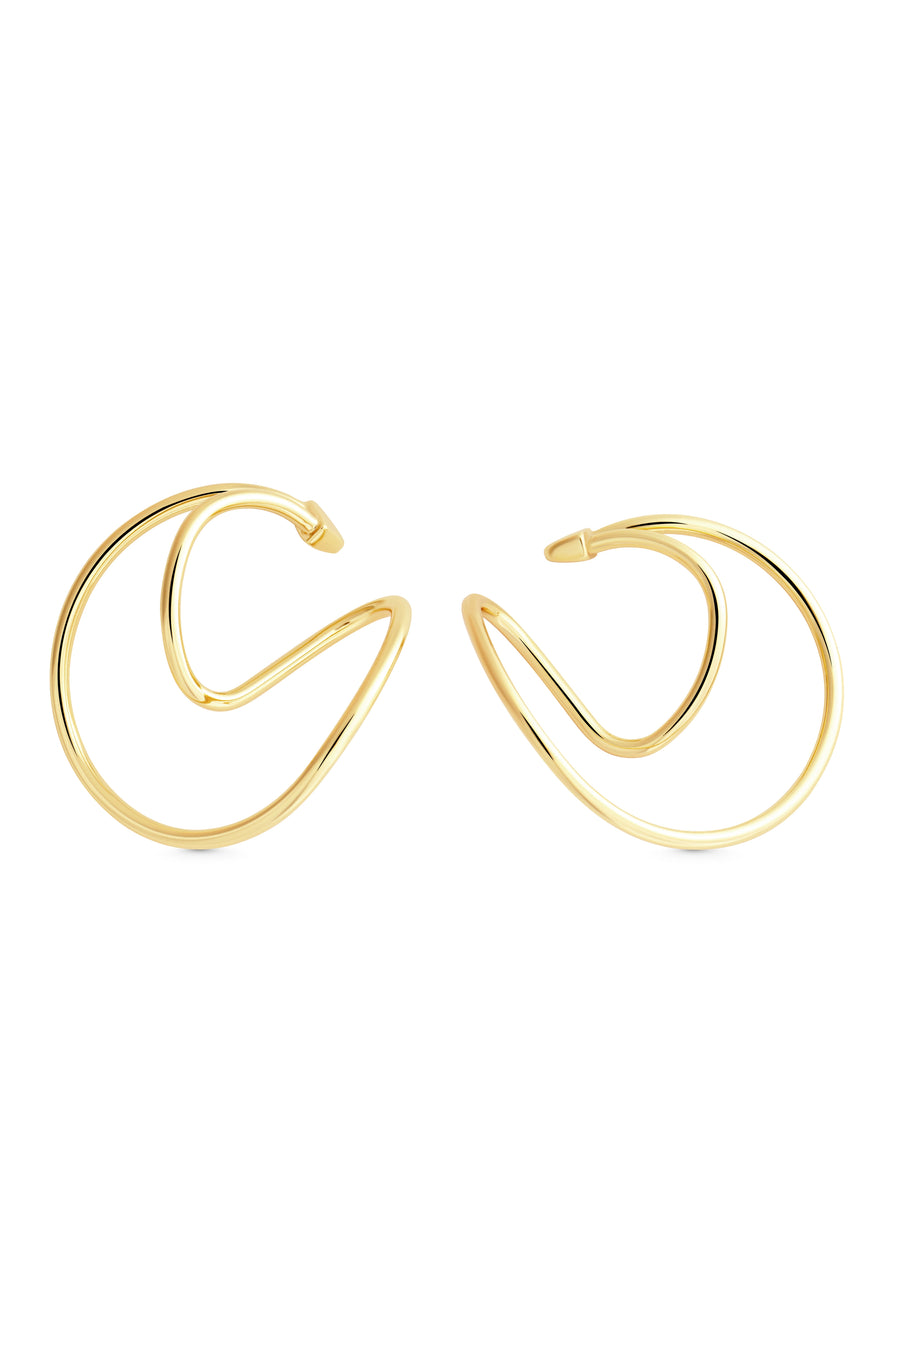 MAJOR Hoops. Bent hoops earlobe hugger earrings, no piercings, 18K gold vermeil, handmade, hypoallergenic, water-resistant